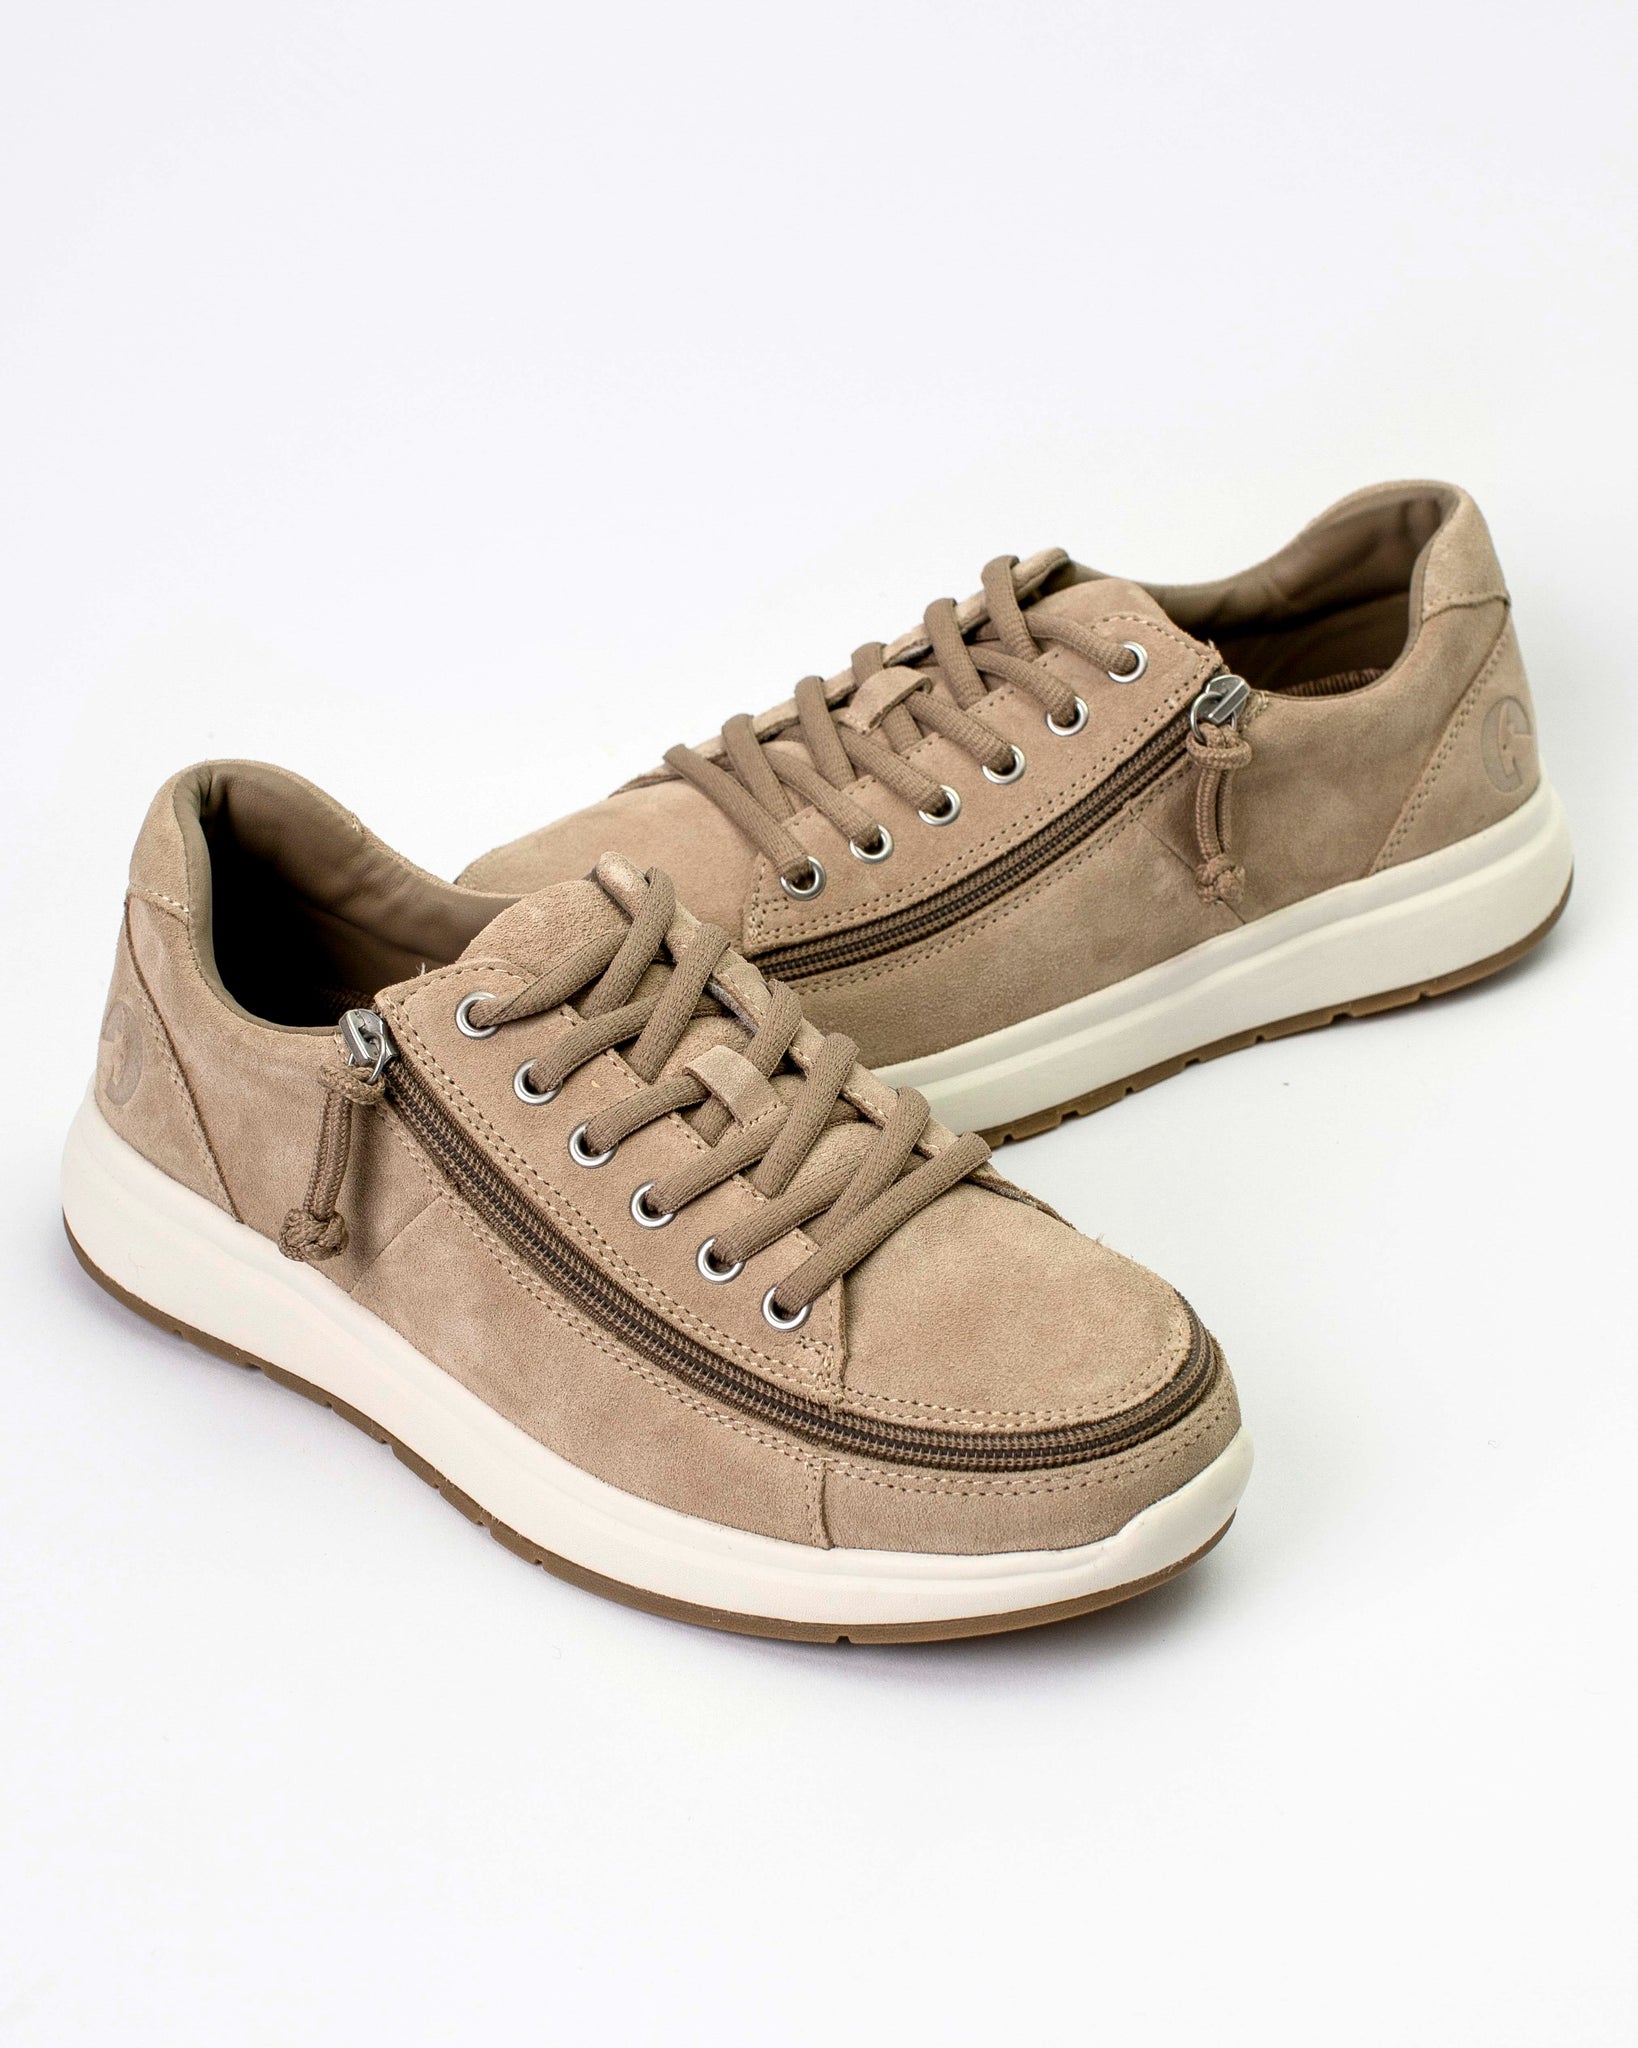 Comfort Sneaker (Men) - Tan Suede